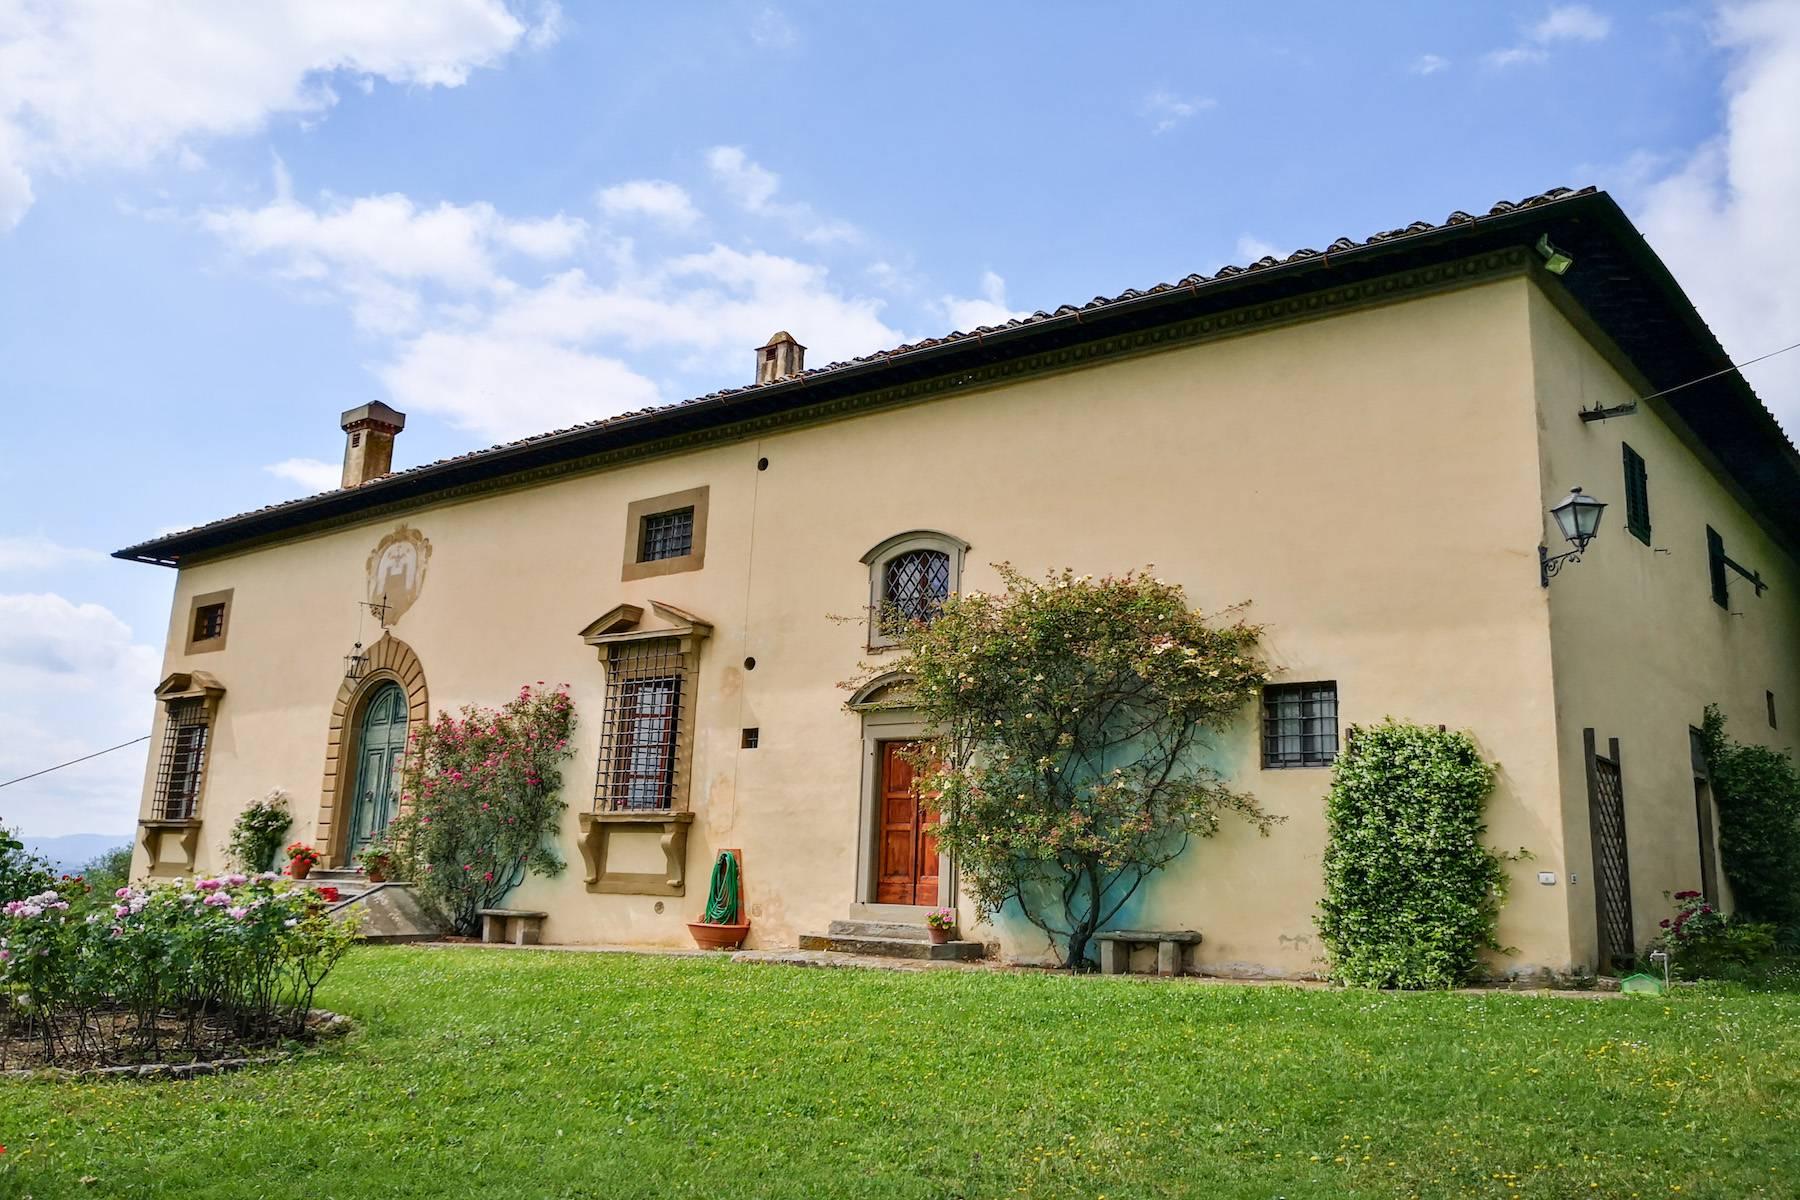 Beautiful estate in Rignano sull'Arno with breathtaking views - 7